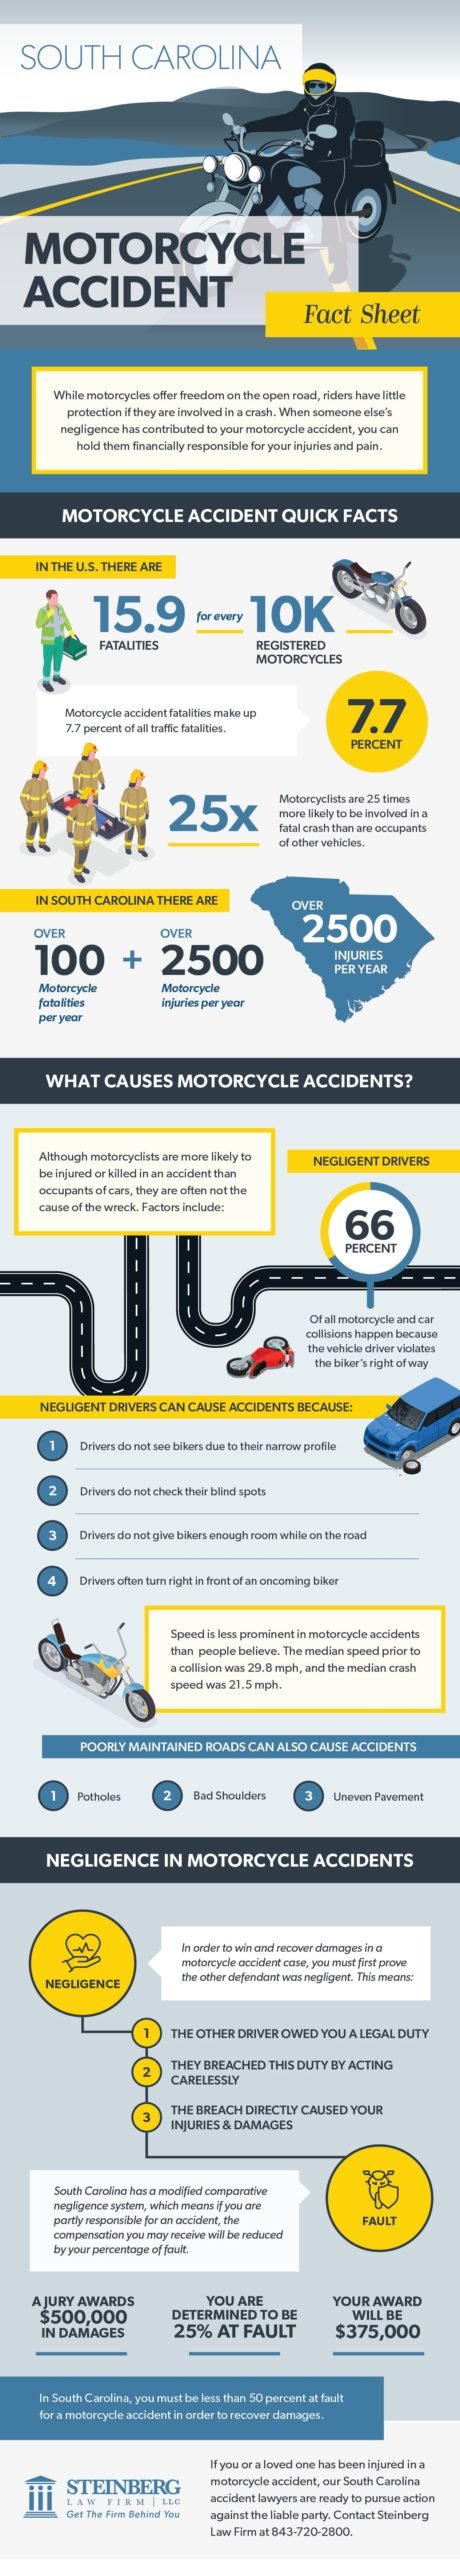 South Carolina abogado de accidentes de moto